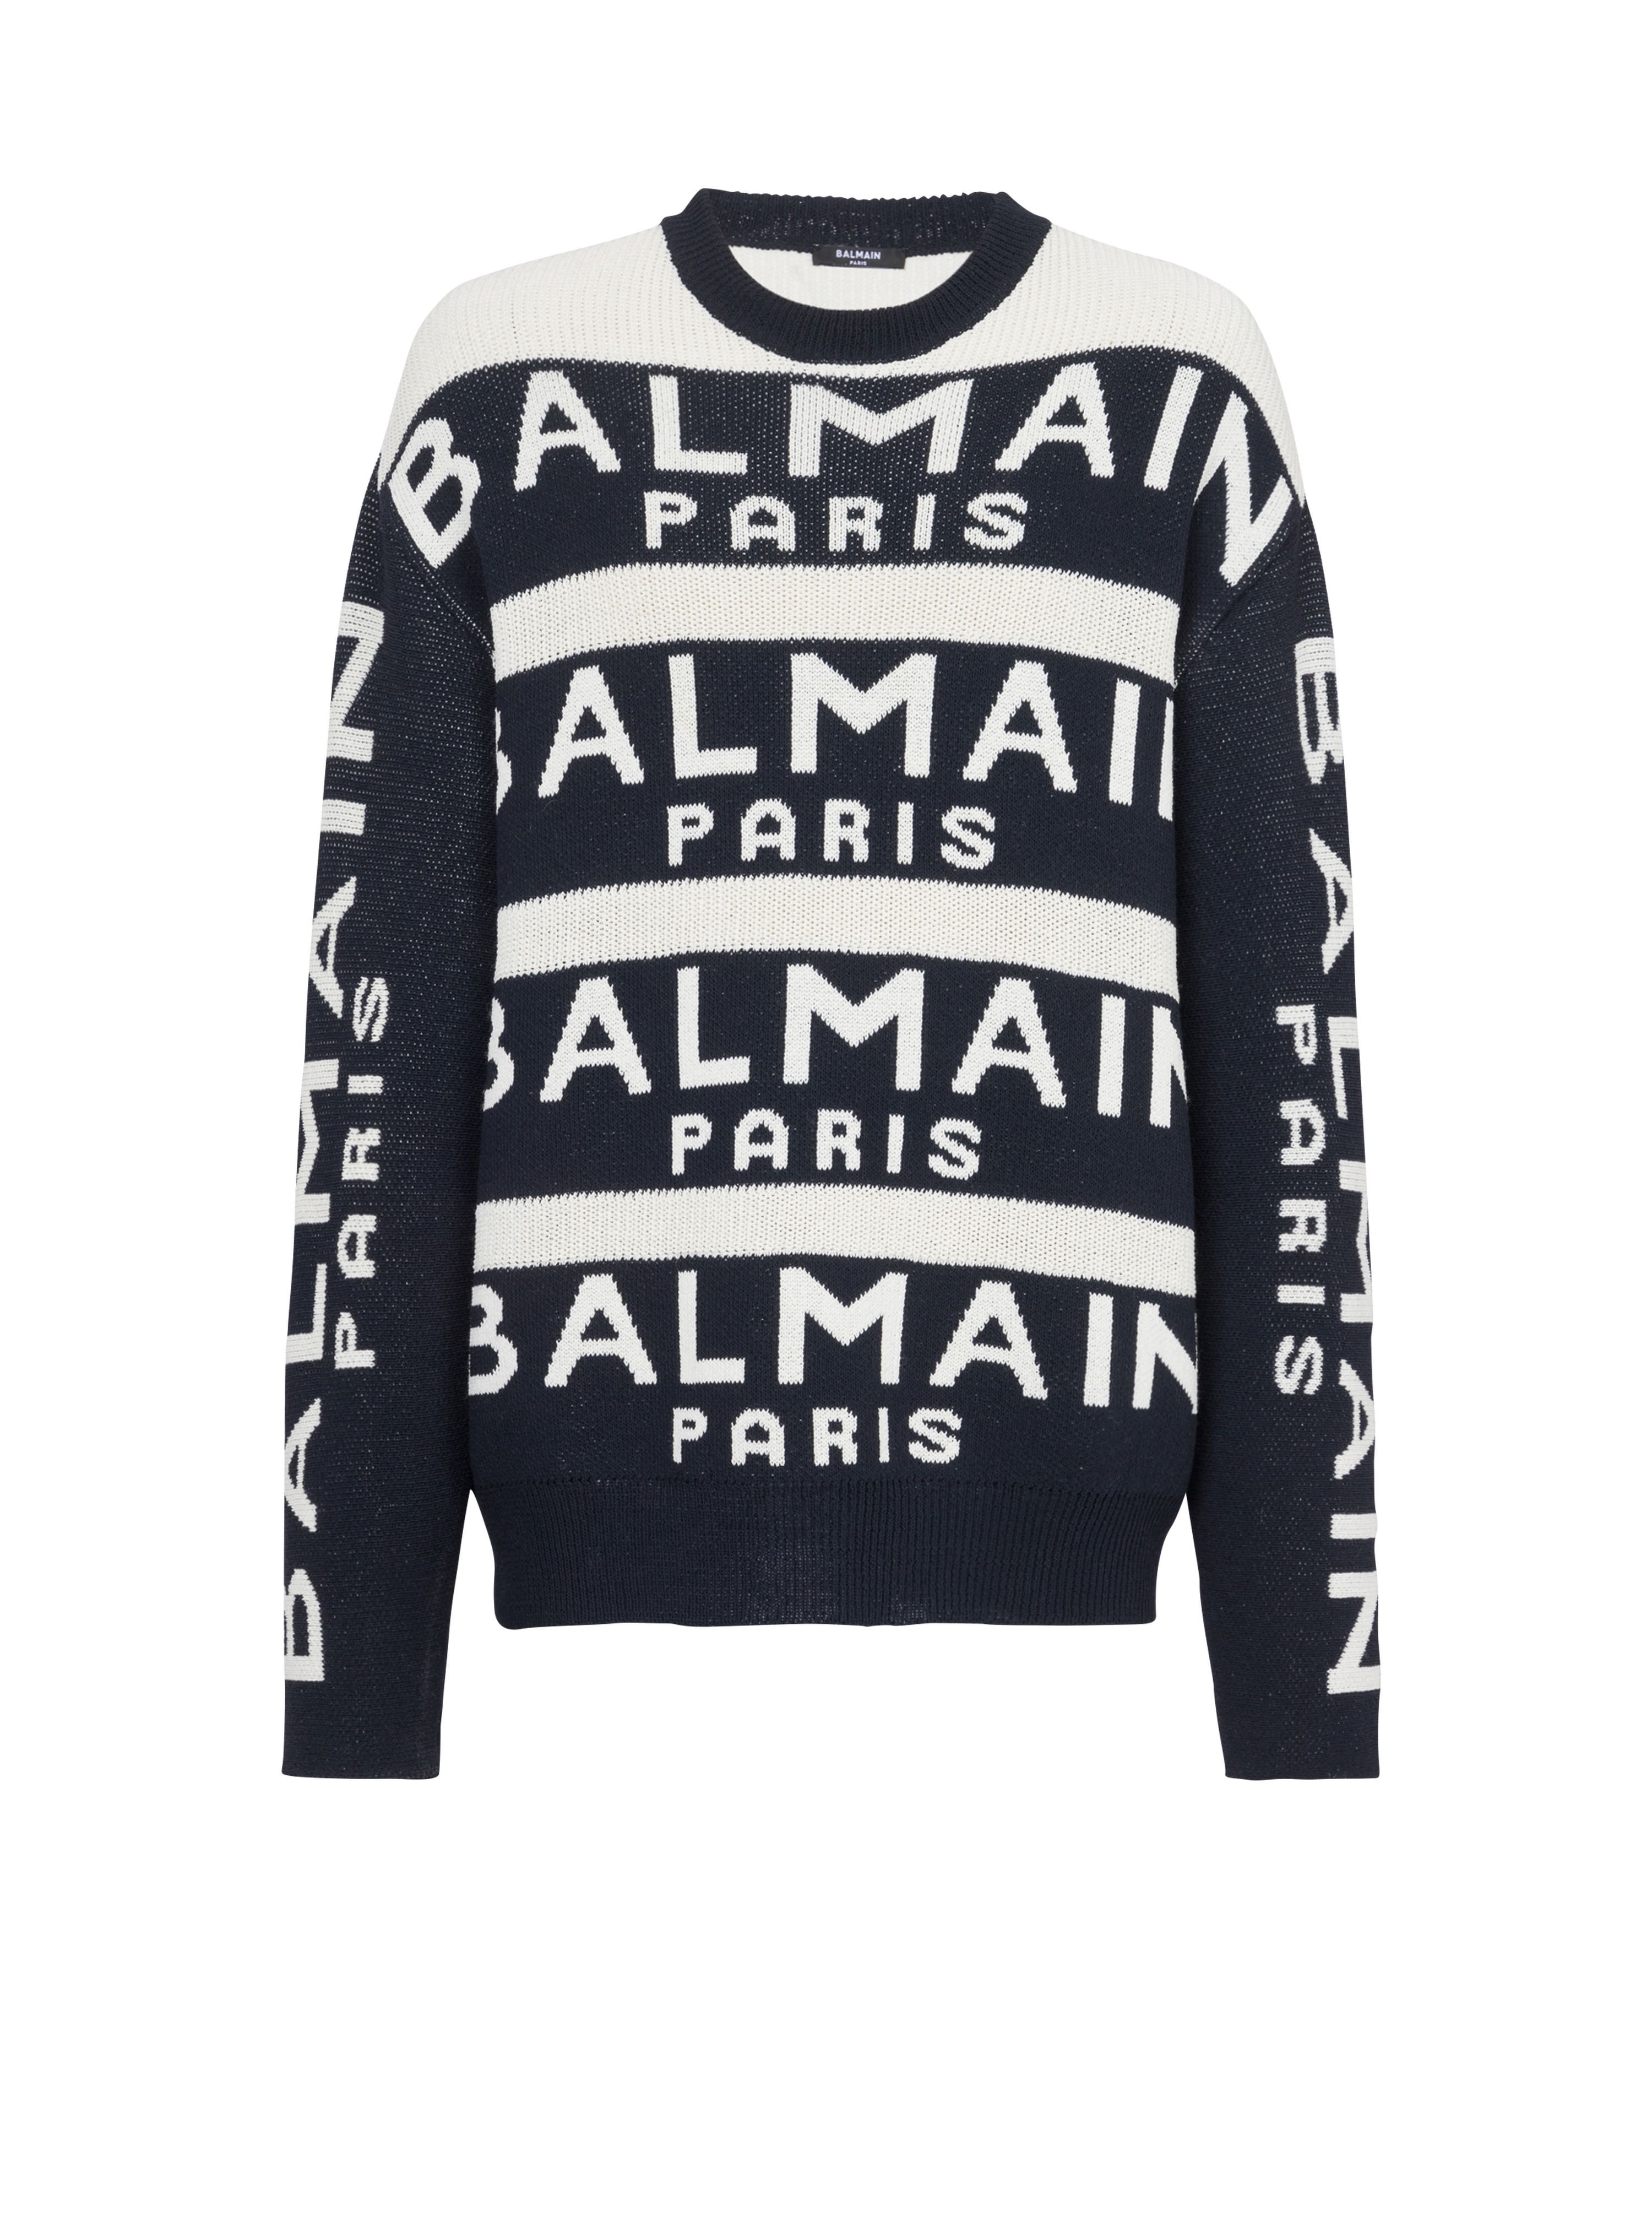 Pullover ricamato con logo Balmain Paris, nero